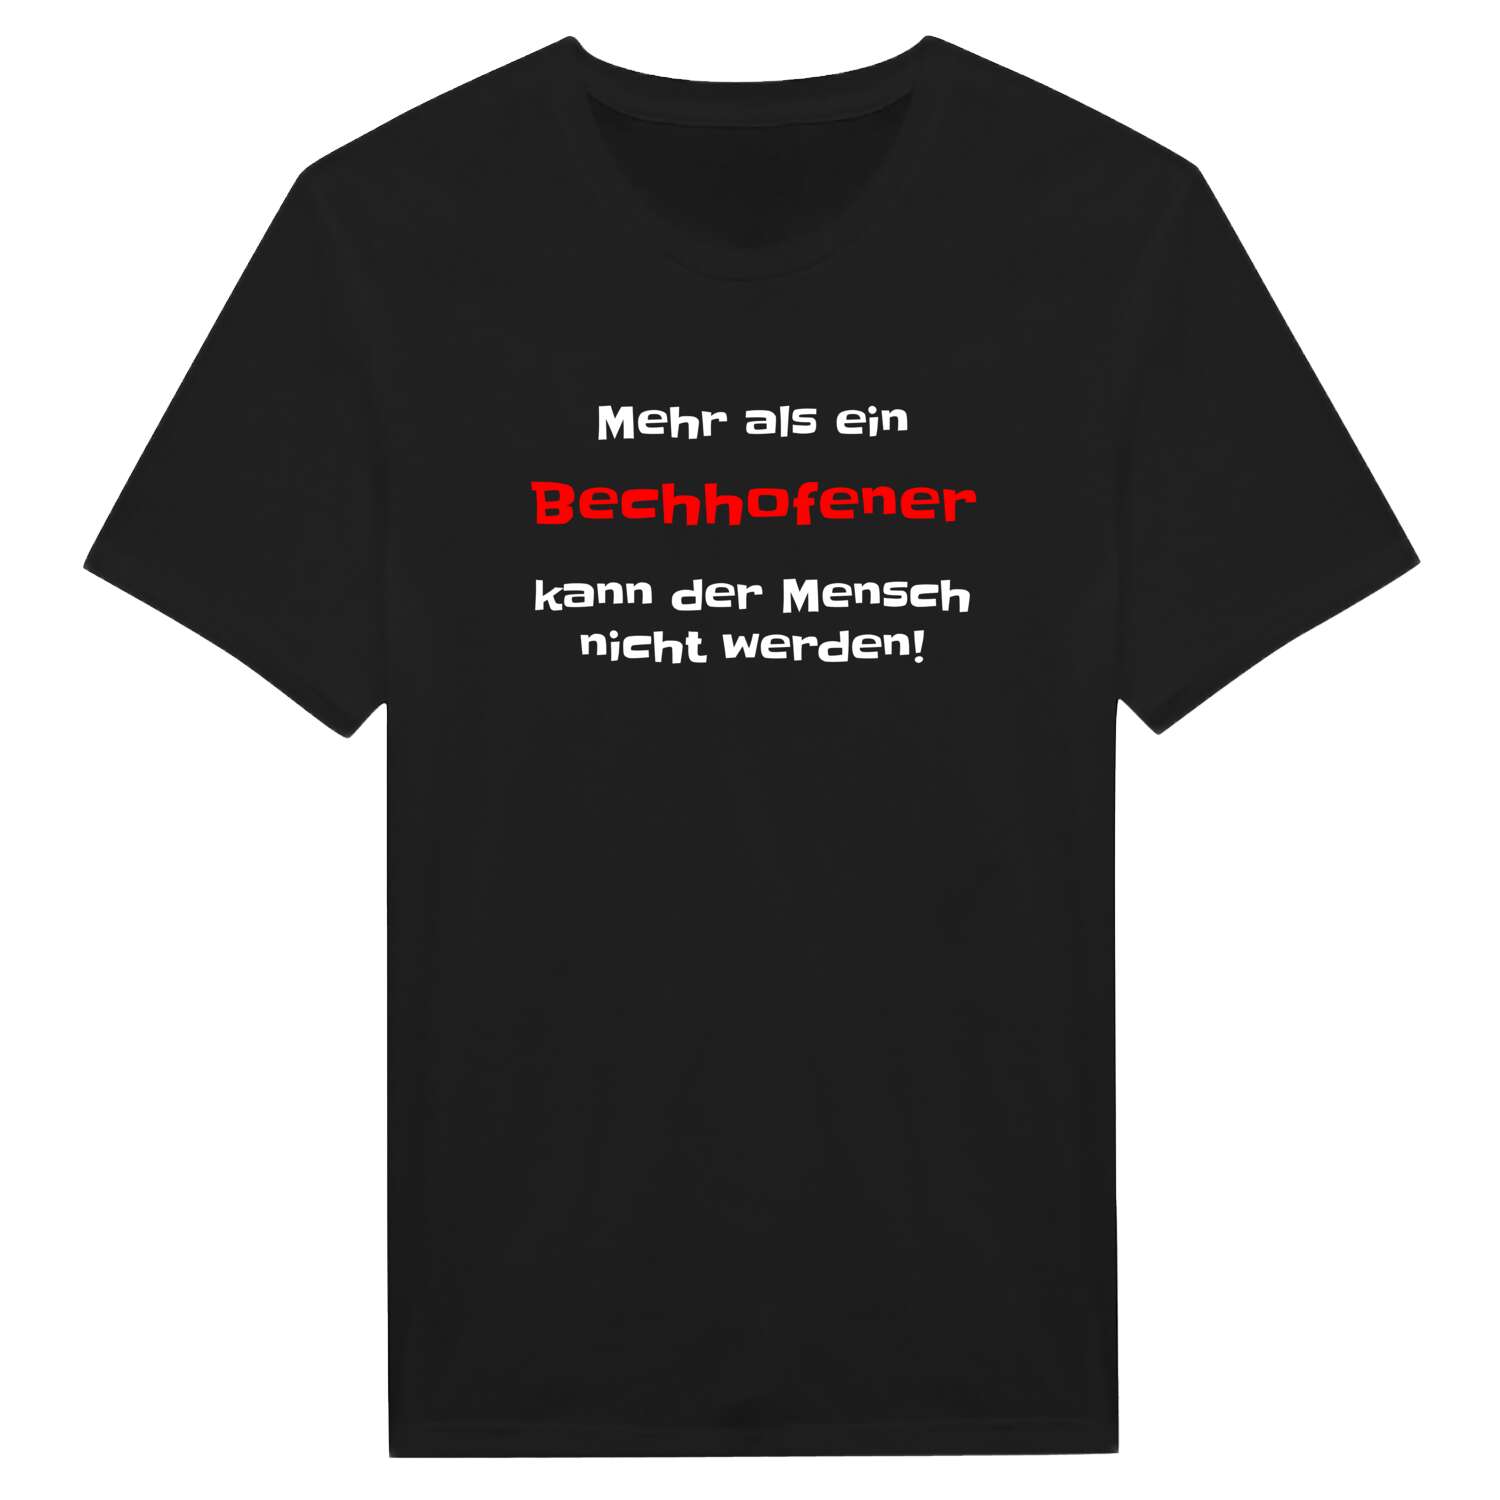 Bechhofen T-Shirt »Mehr als ein«